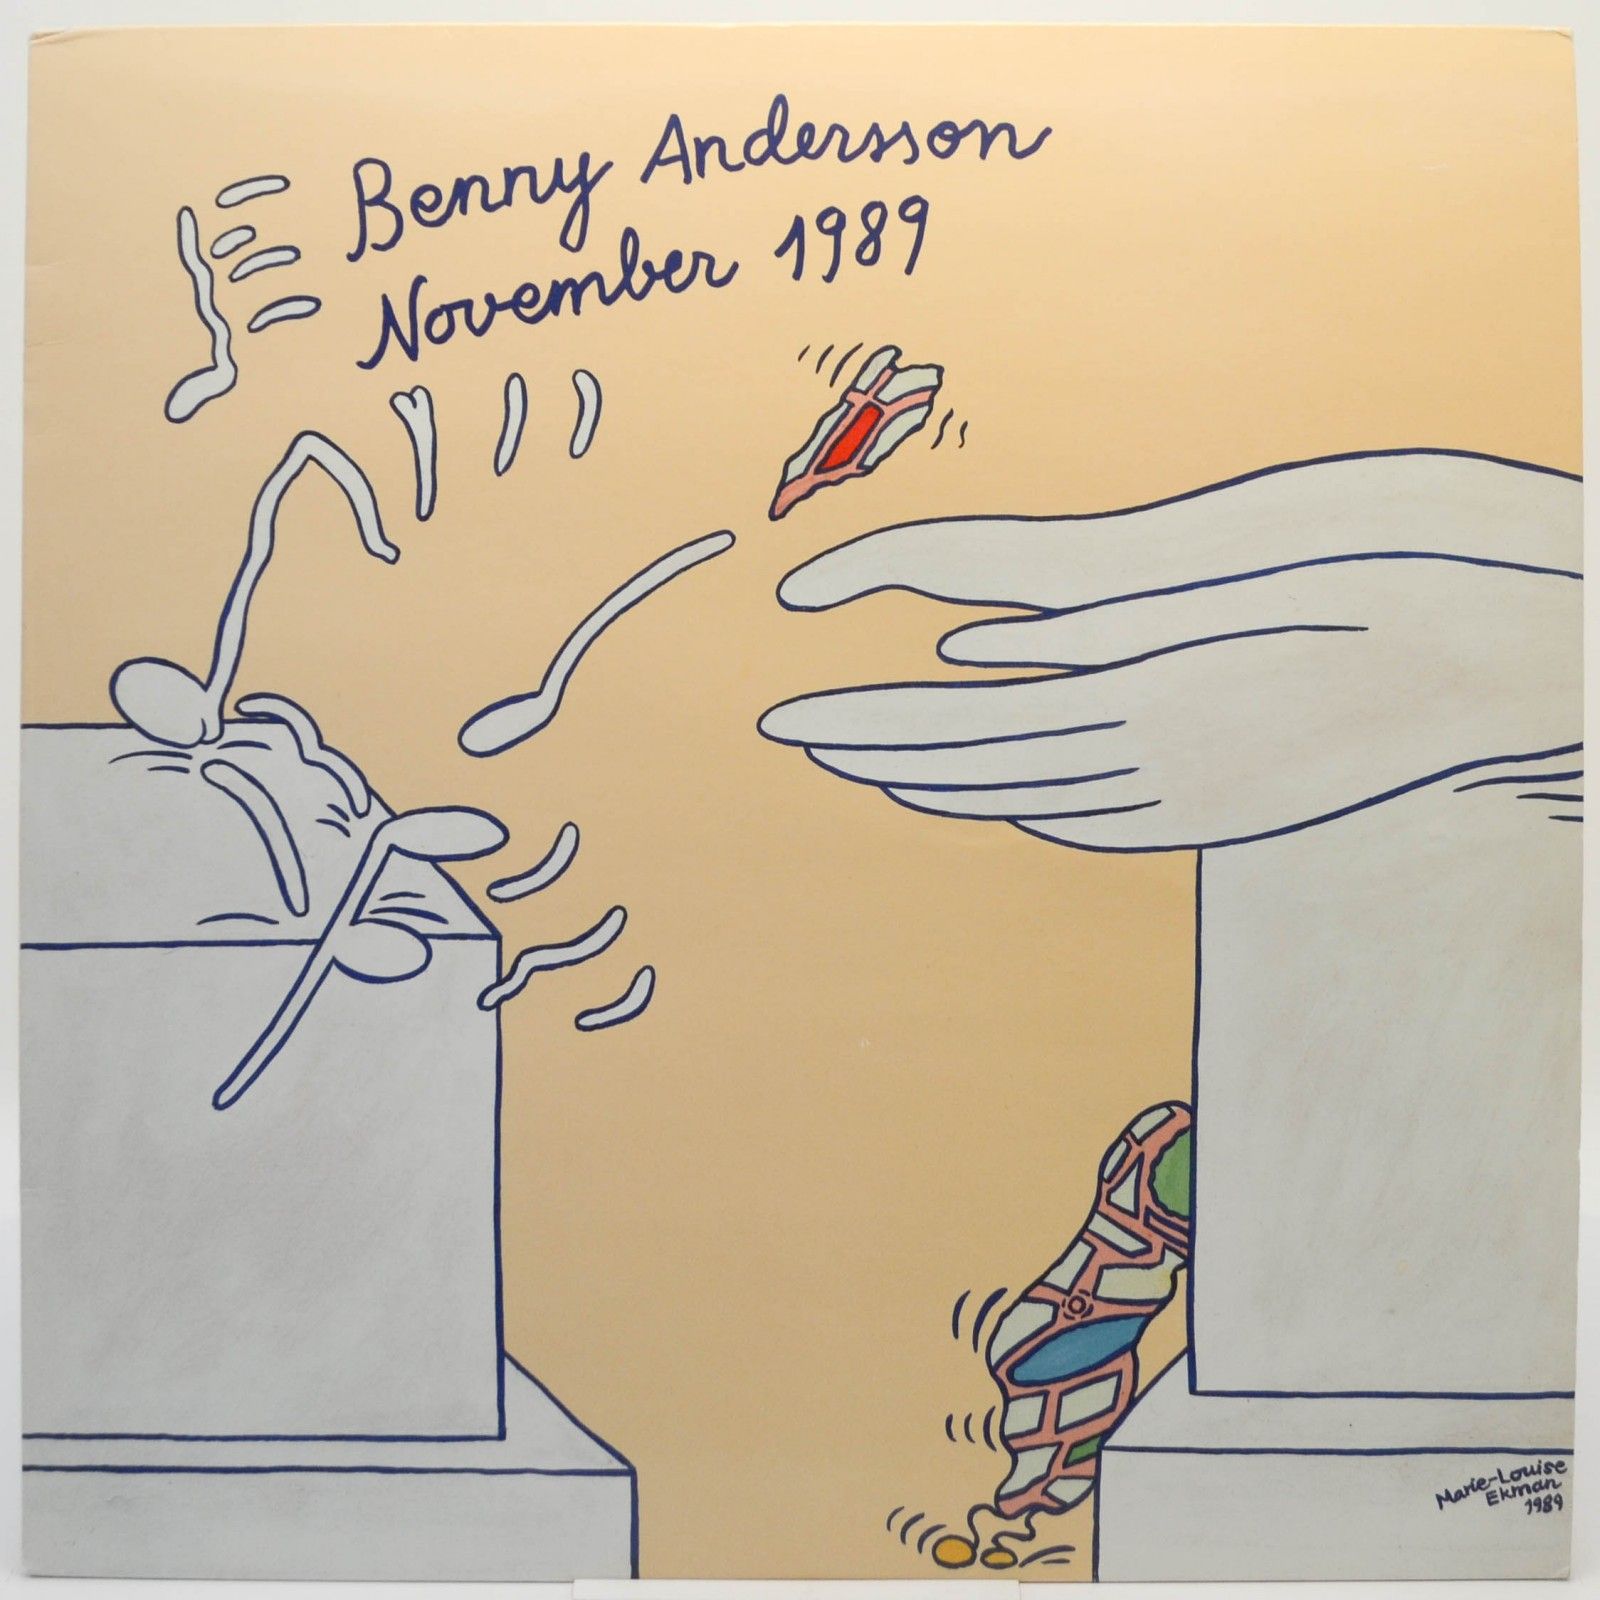 Benny Andersson — November 1989 (1-st, Sweden), 1989